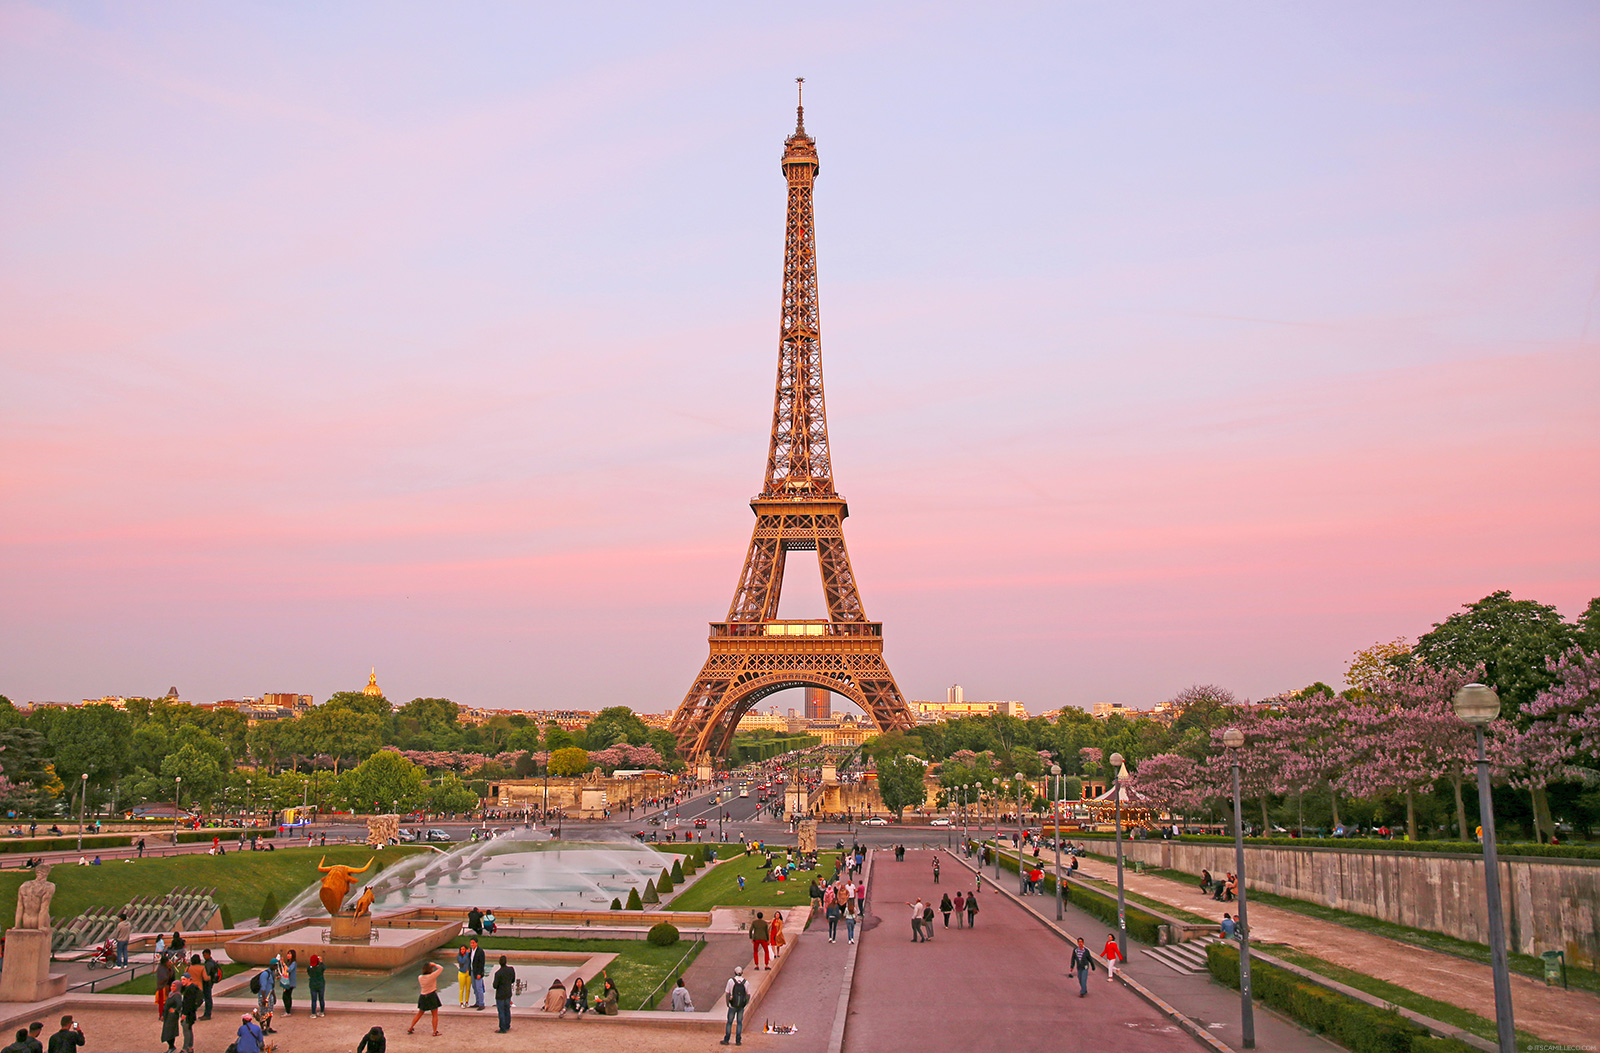 Eiffel Tower, Paris - www.itscamilleco.com